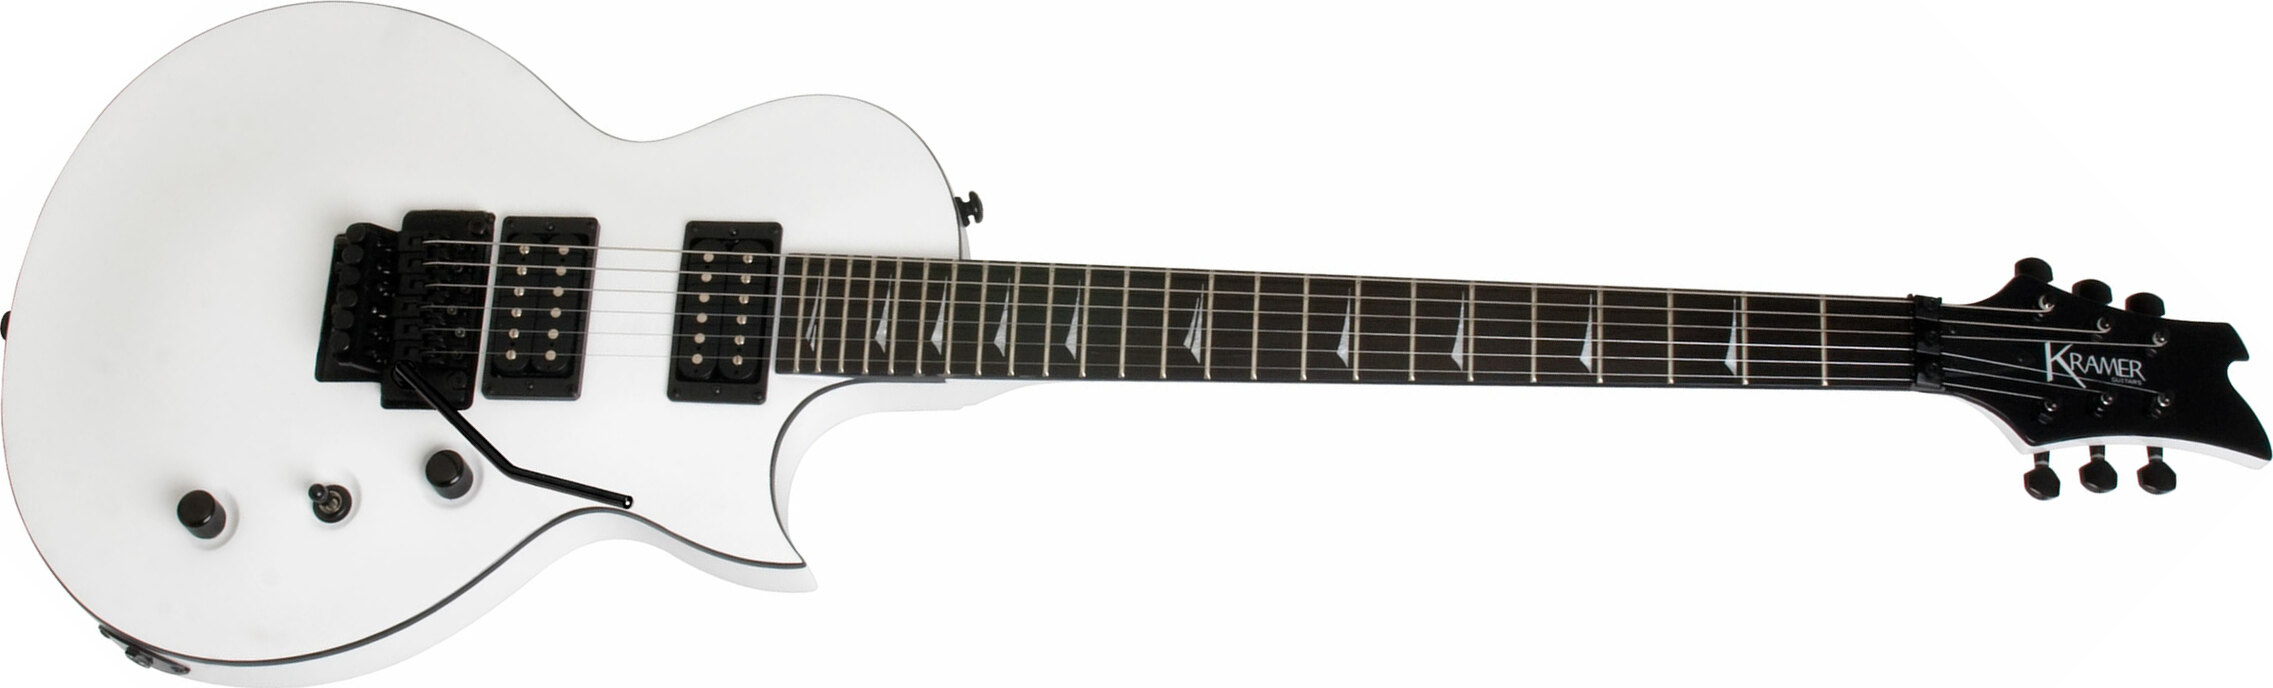 Kramer Assault 220 2h Fr Rw - Alpine White - Enkel gesneden elektrische gitaar - Main picture